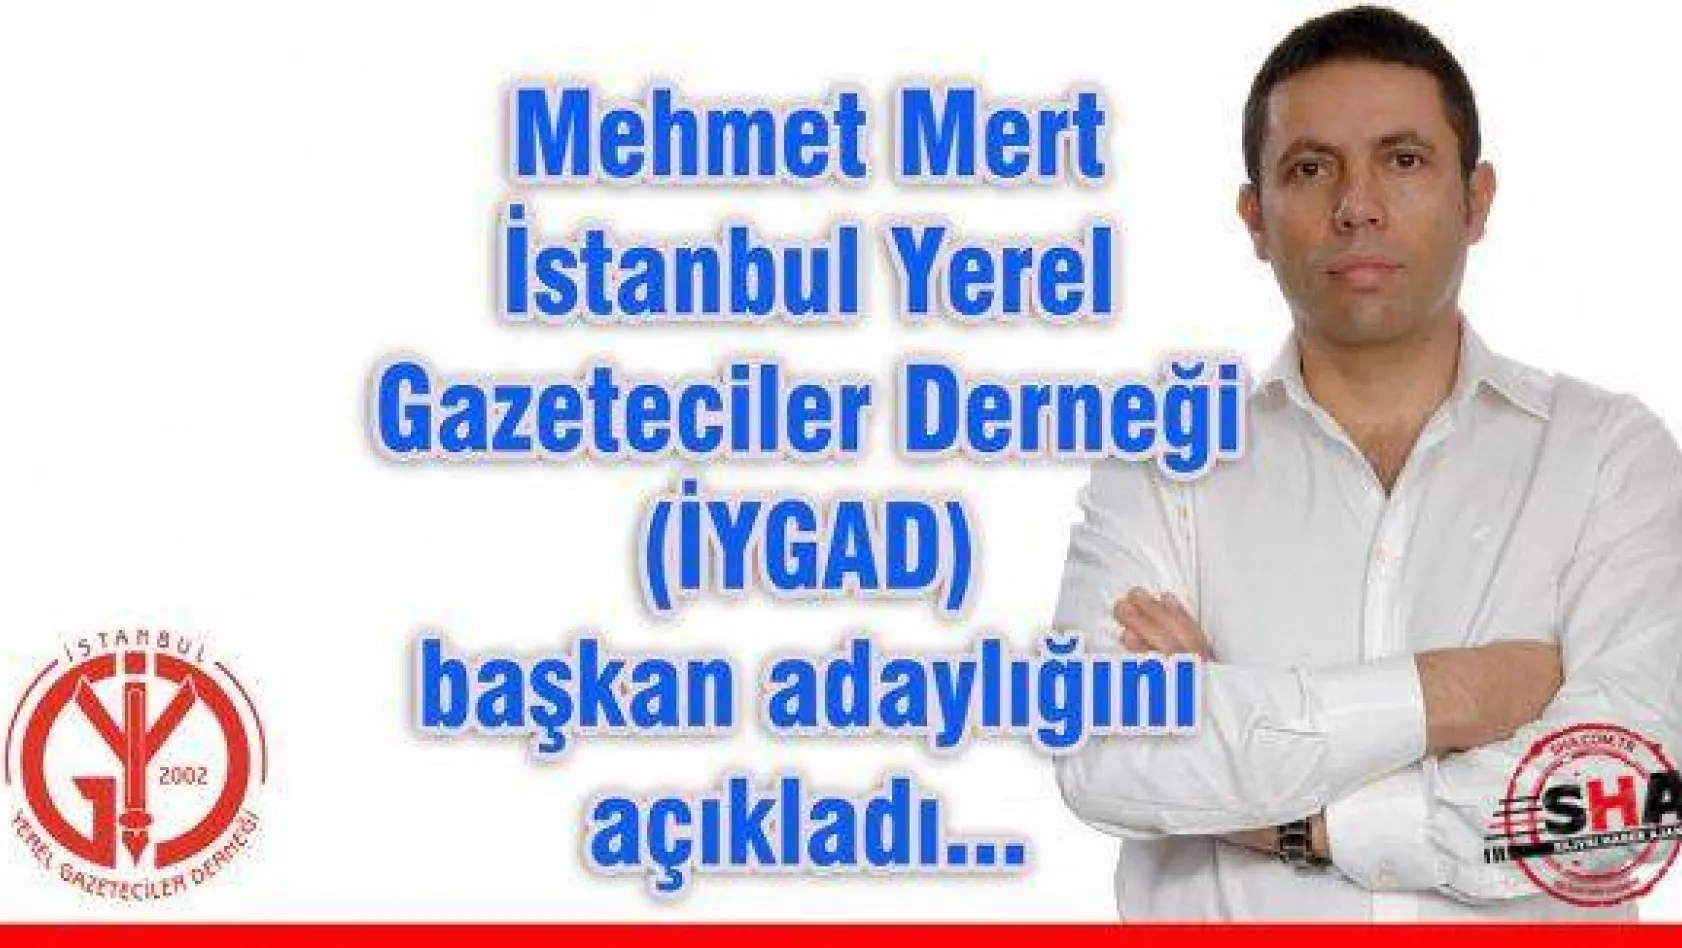 Mehmet Mert İYGAD başkan adayı!